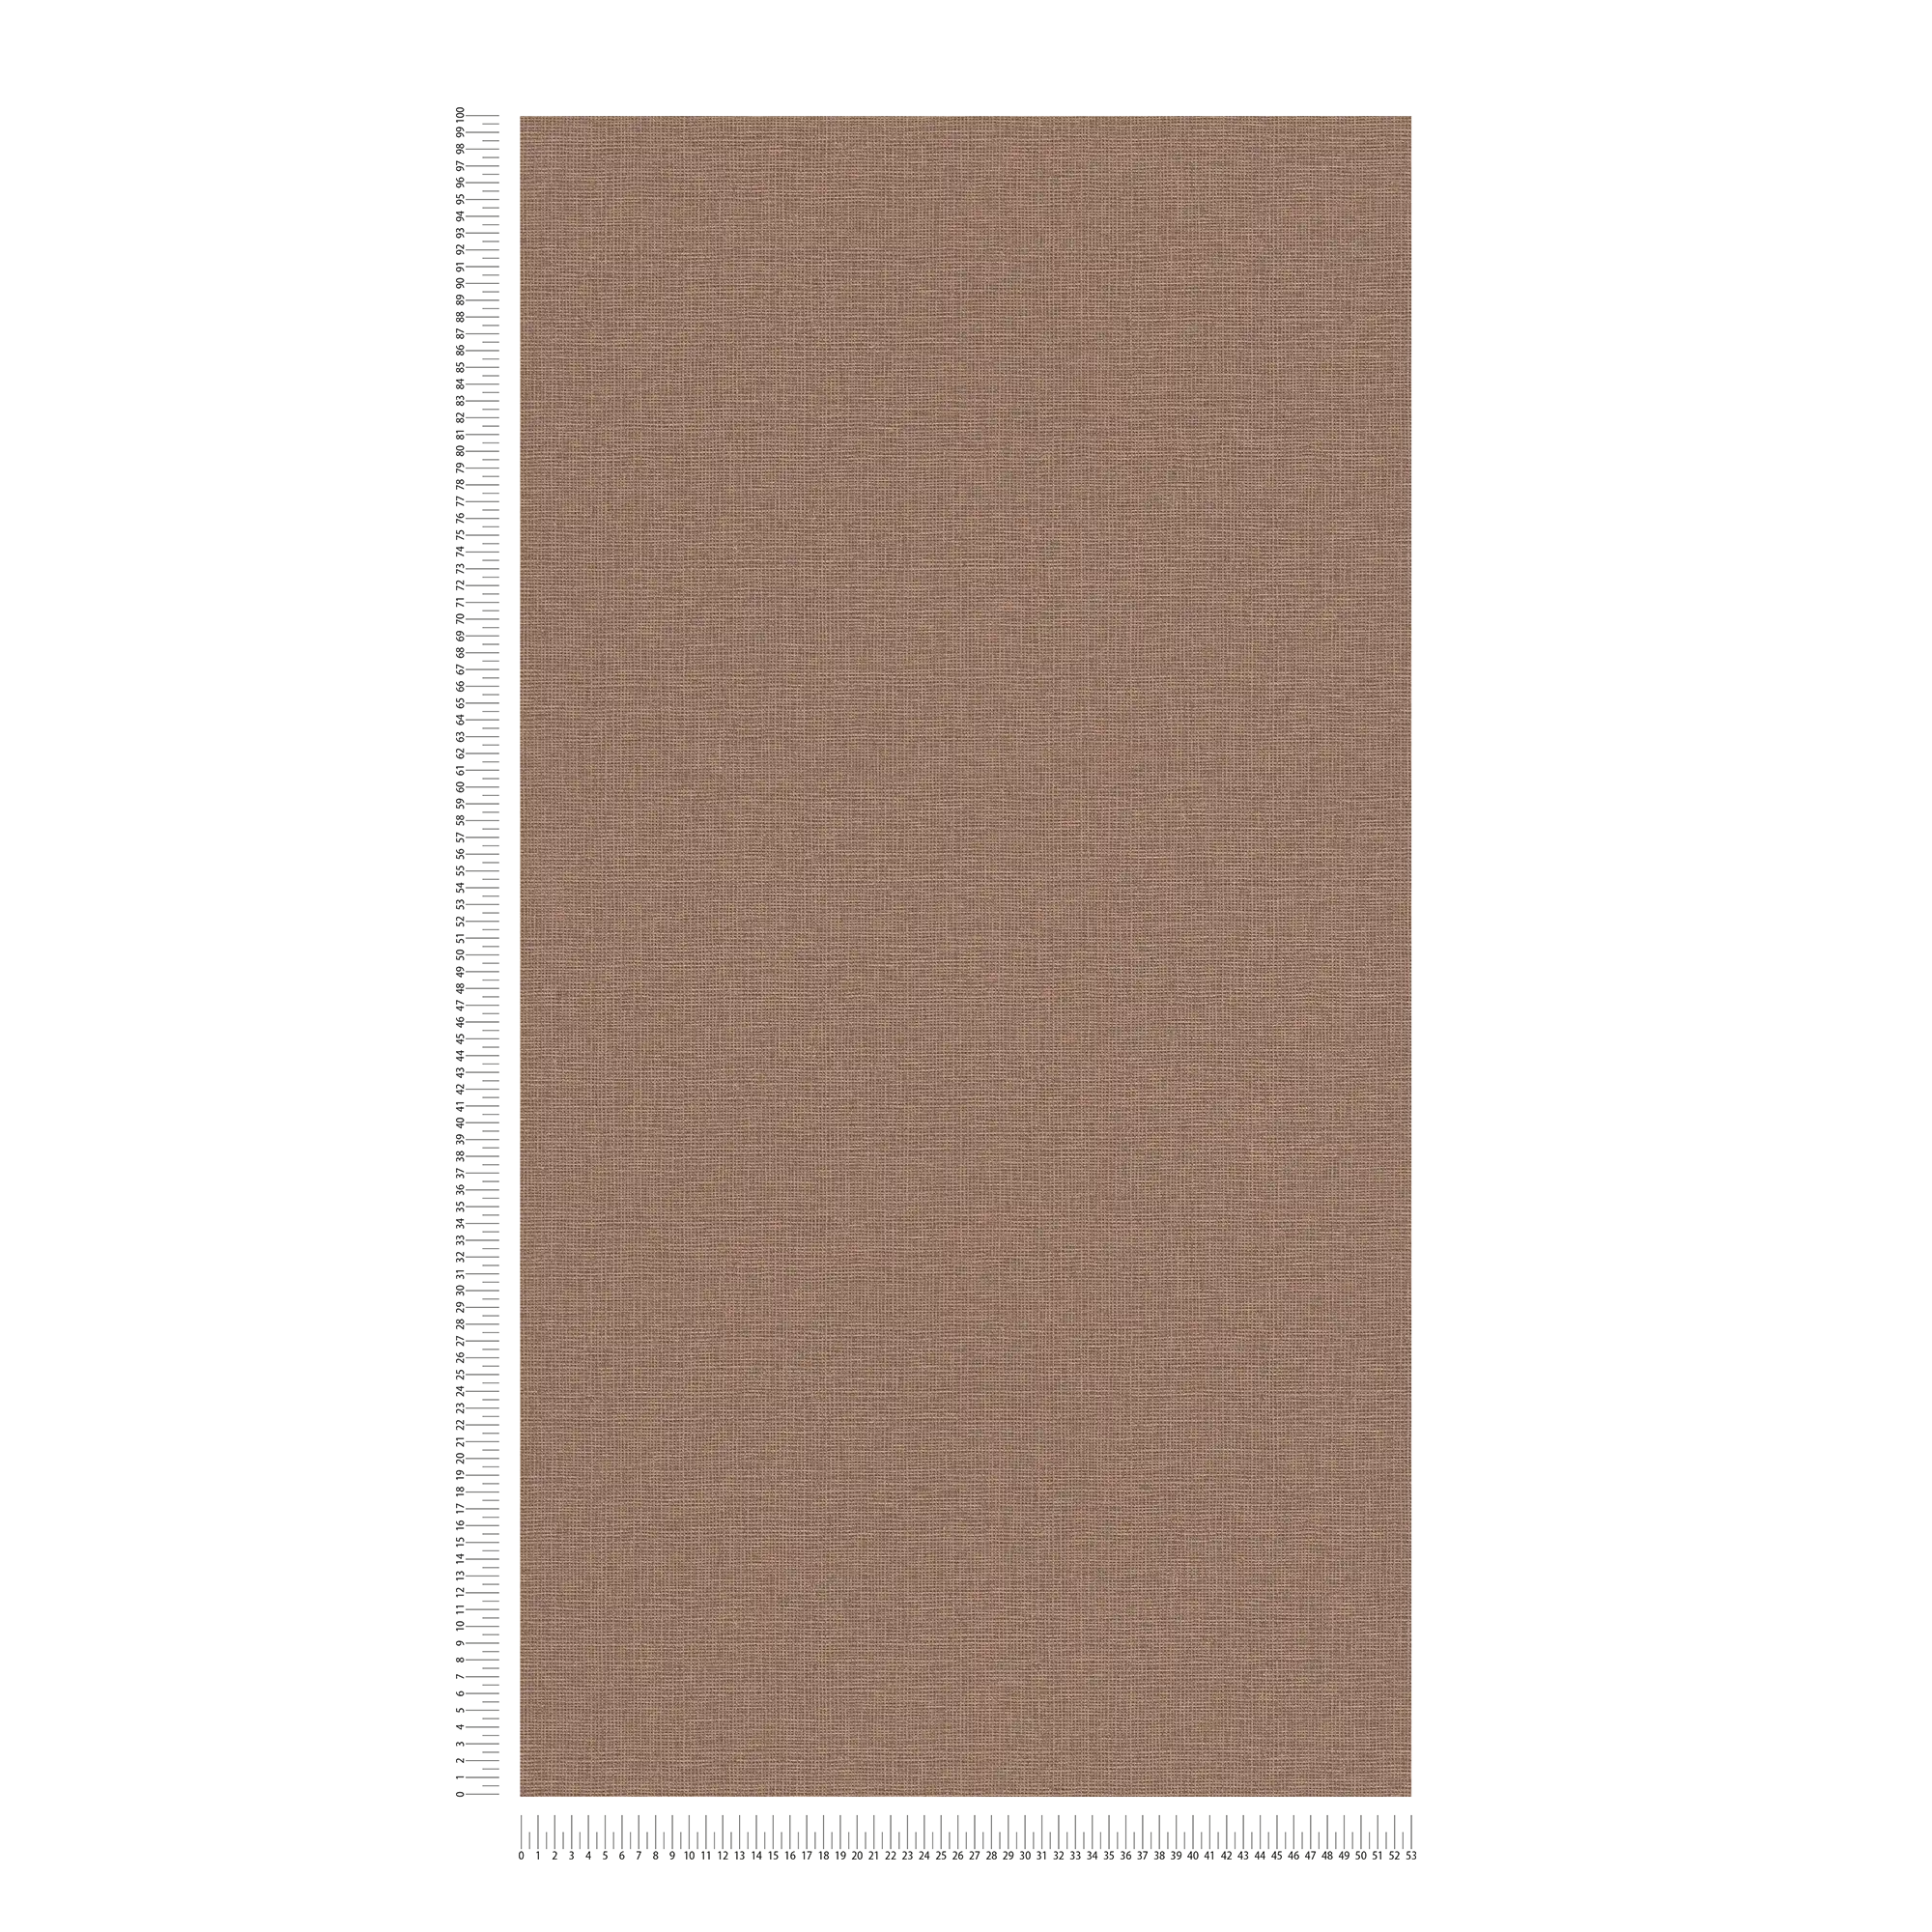             Carta da parati in tessuto non tessuto a tinta unita con struttura in lino - marrone
        